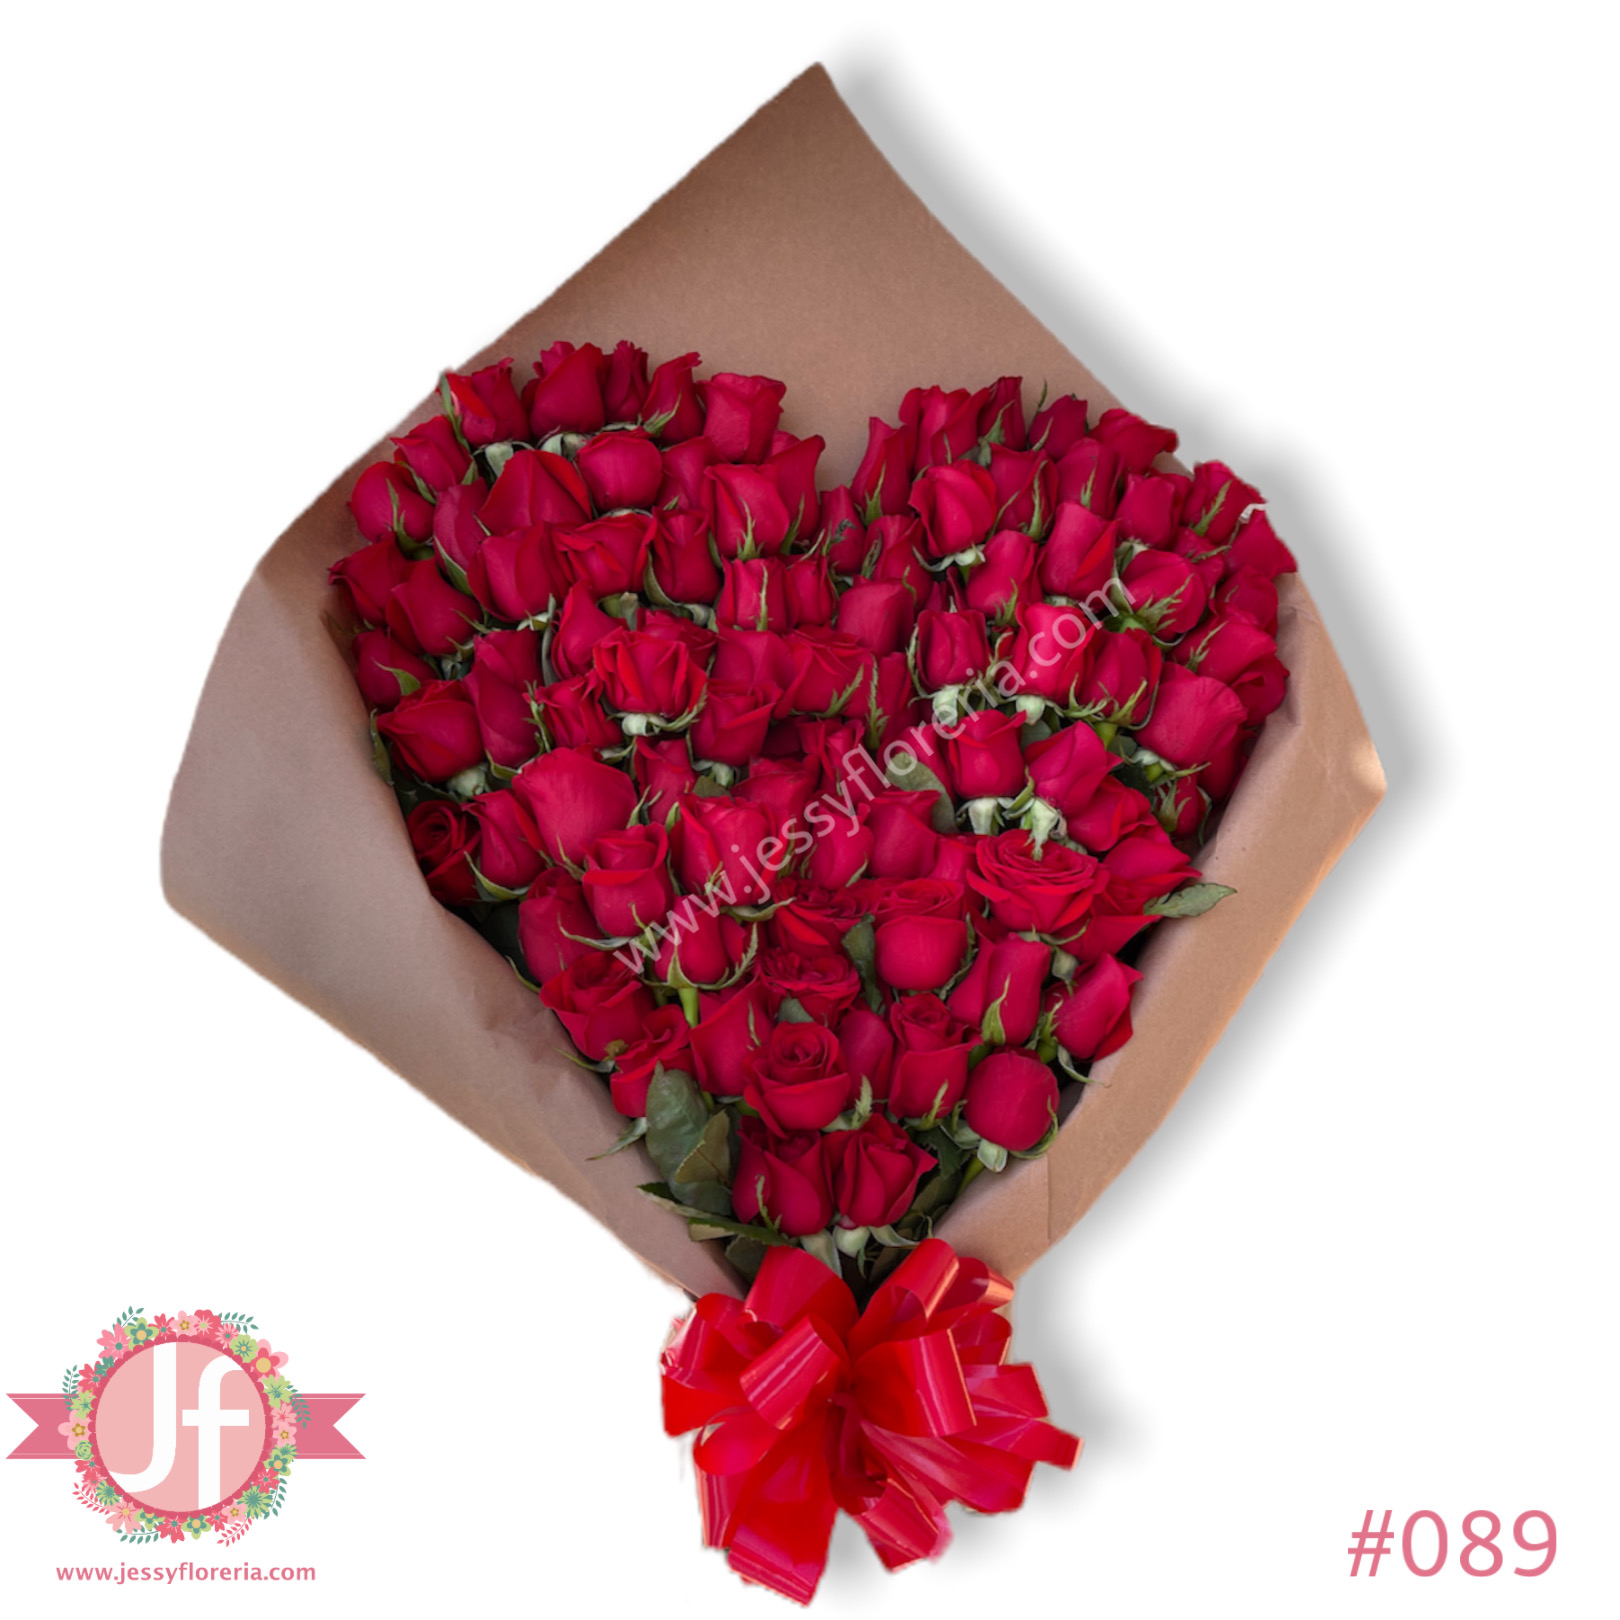 31 ideas de Ramos de rosas  rosas, ramos, ramo de rosas